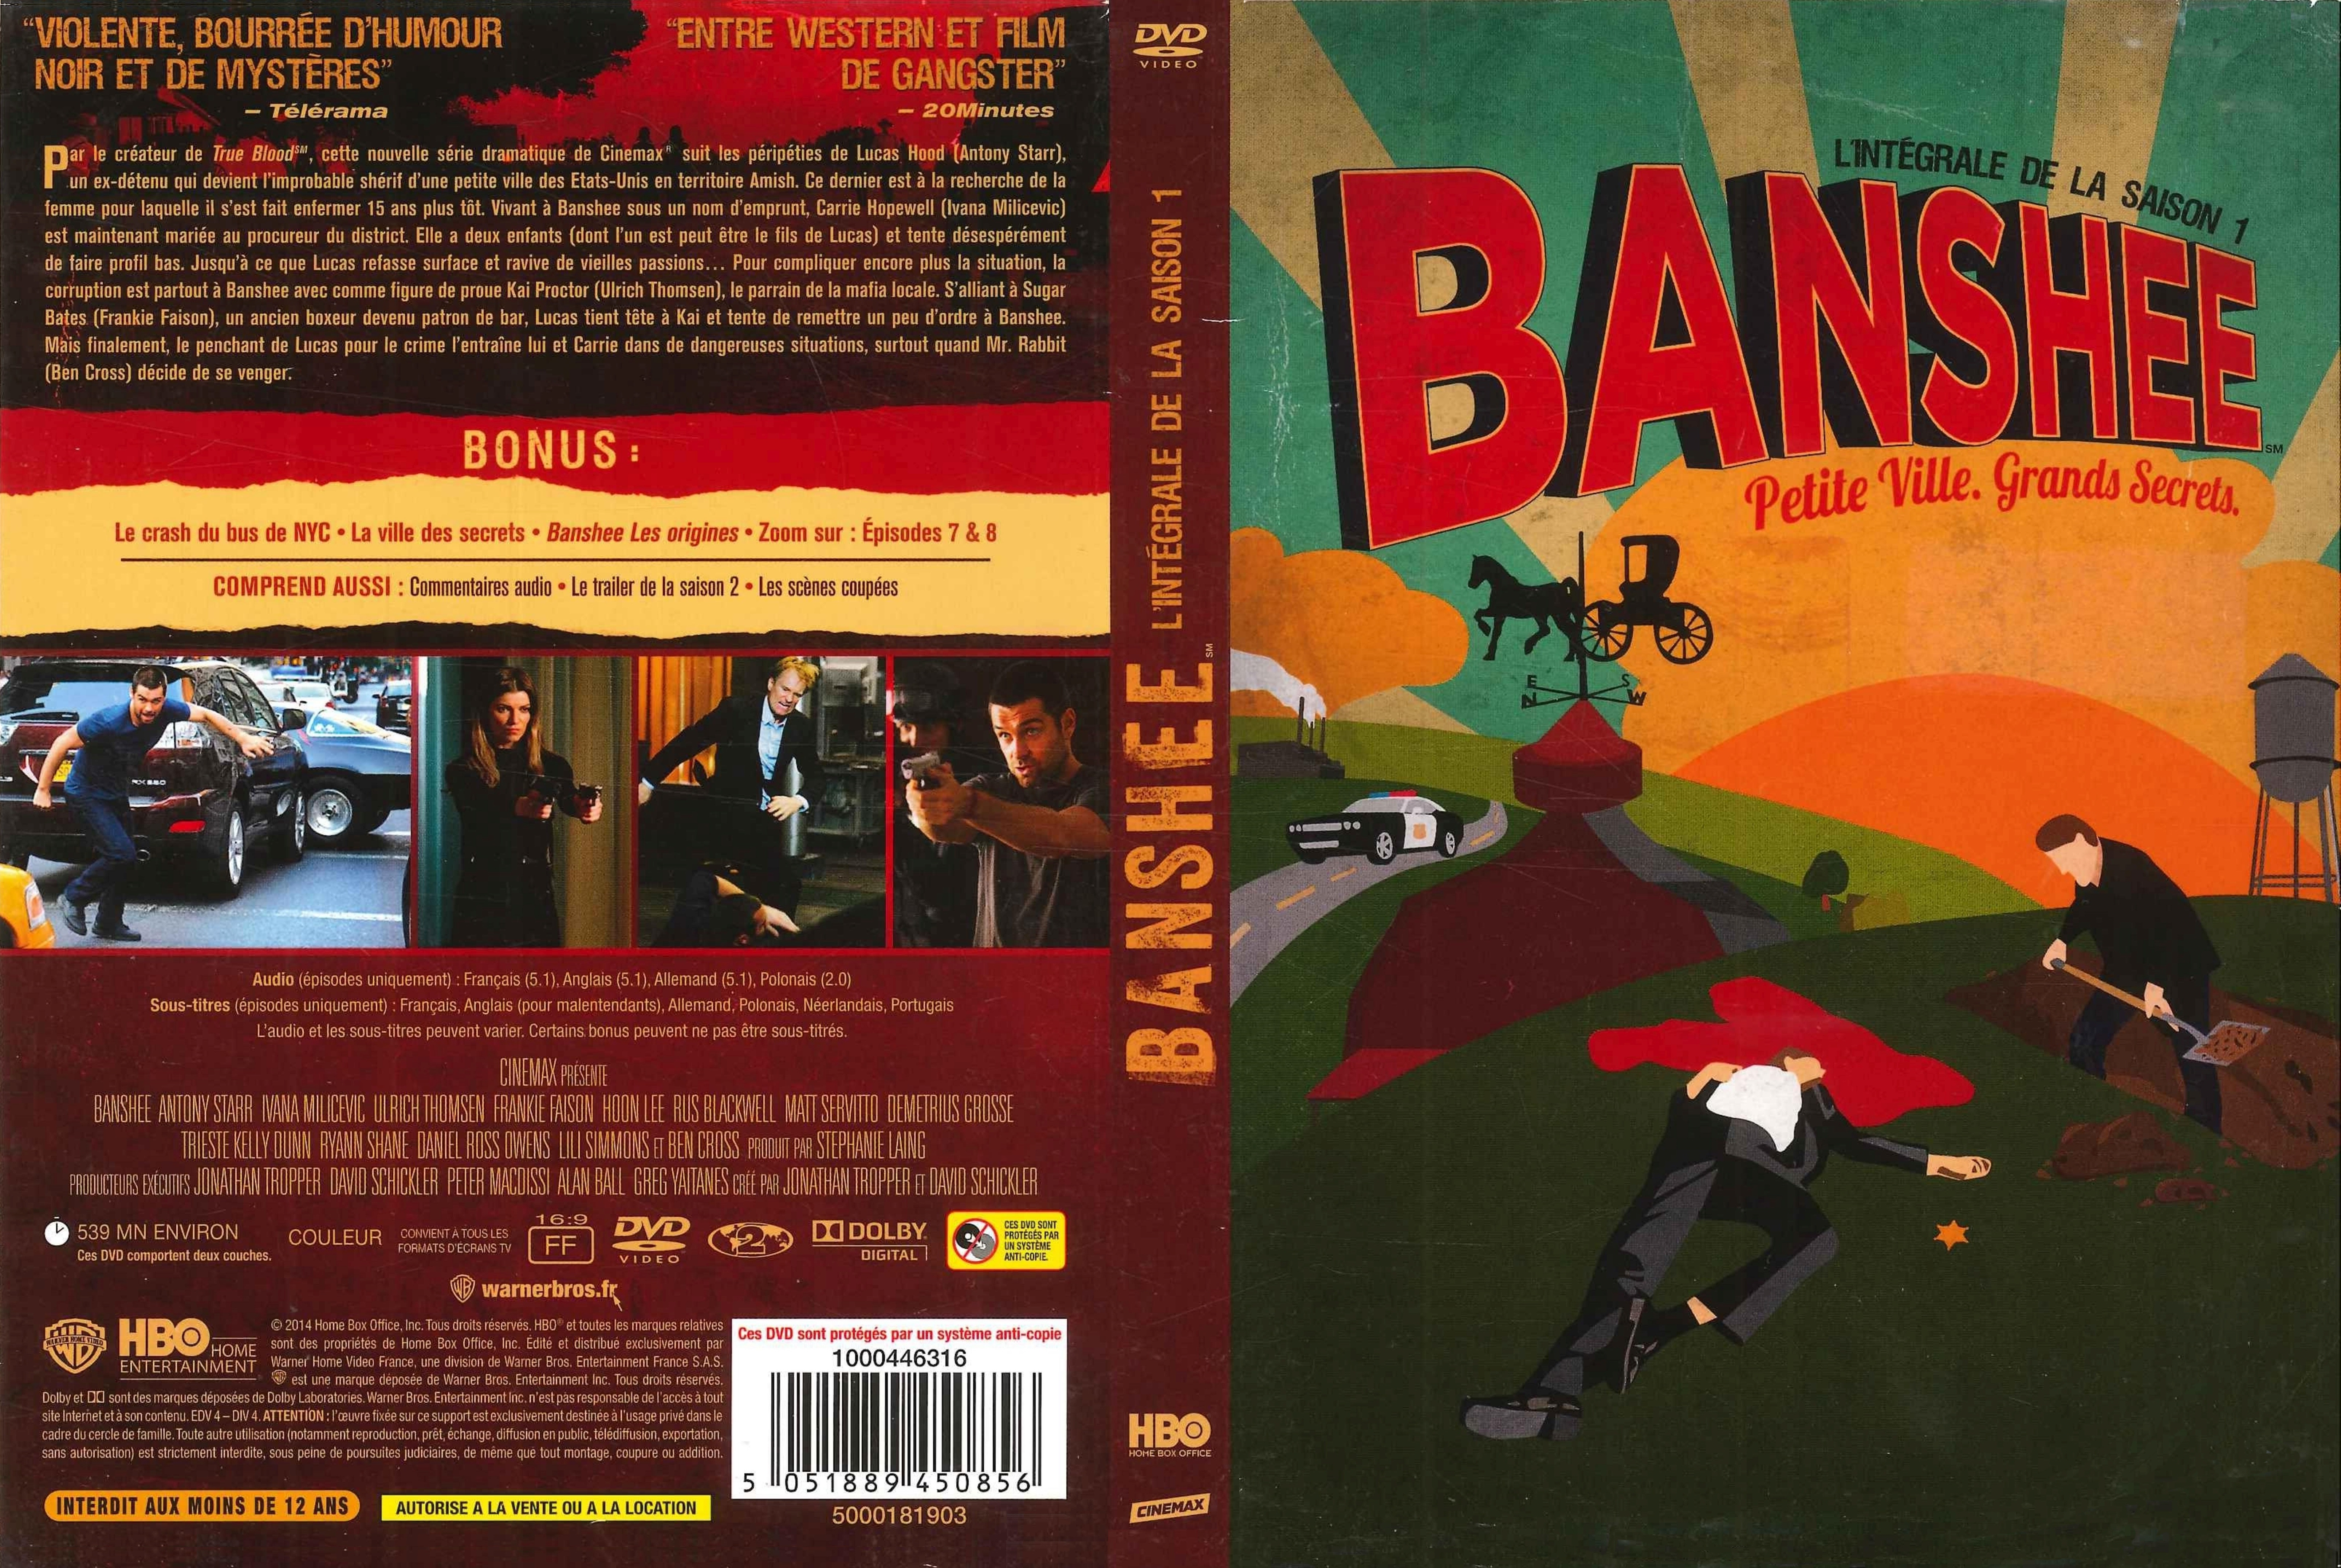 Jaquette DVD Banshee Saison 1